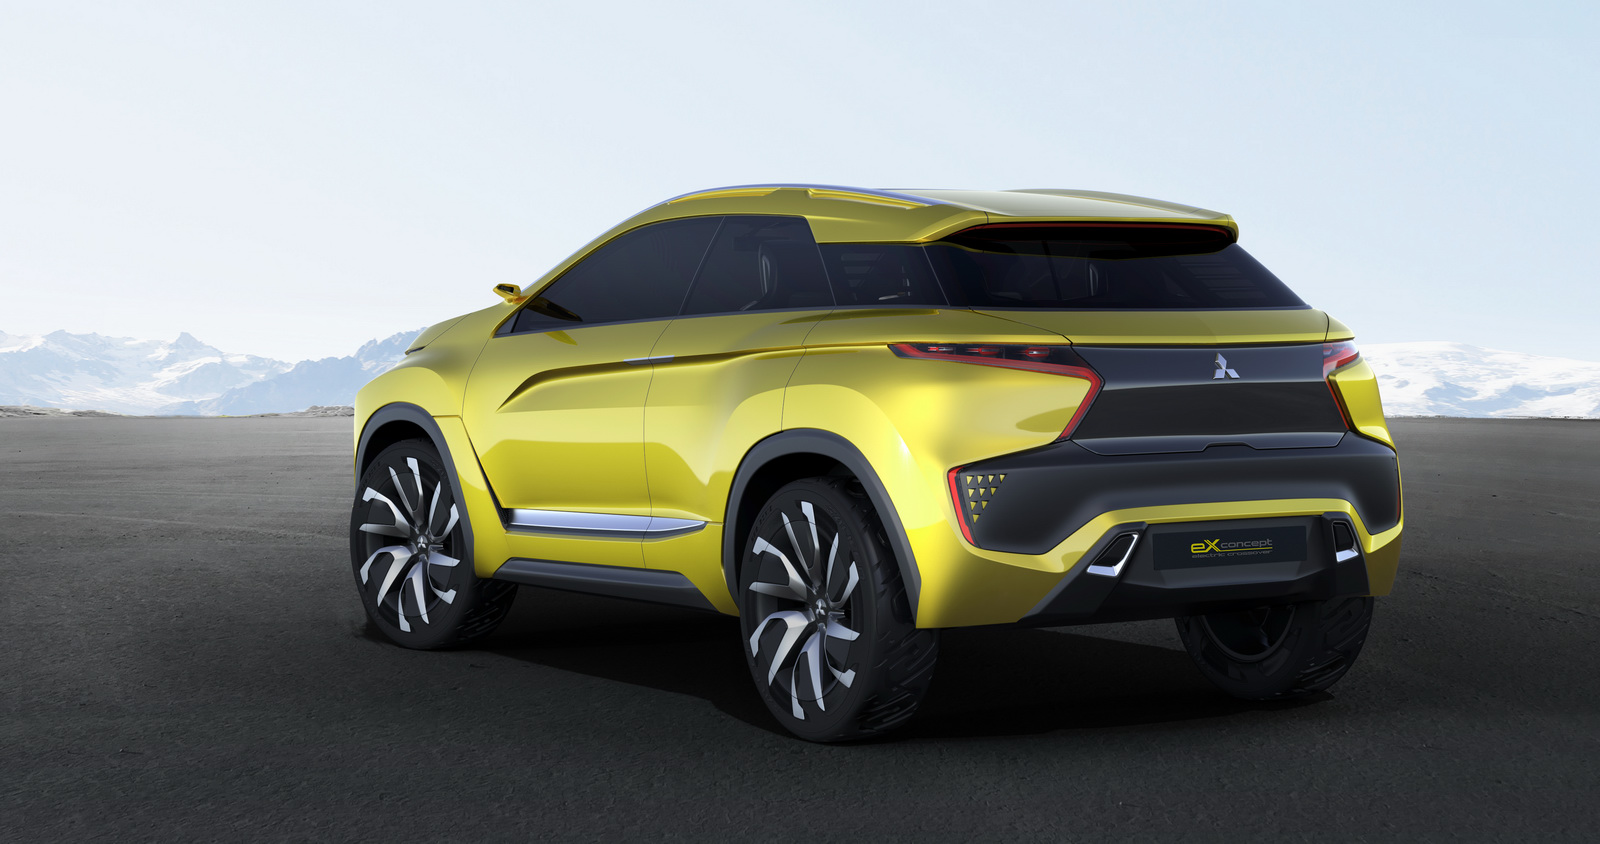 Mitsubishi 2020 yılına kadar elektrikli SUV modeli geliştirmeyi planlıyor